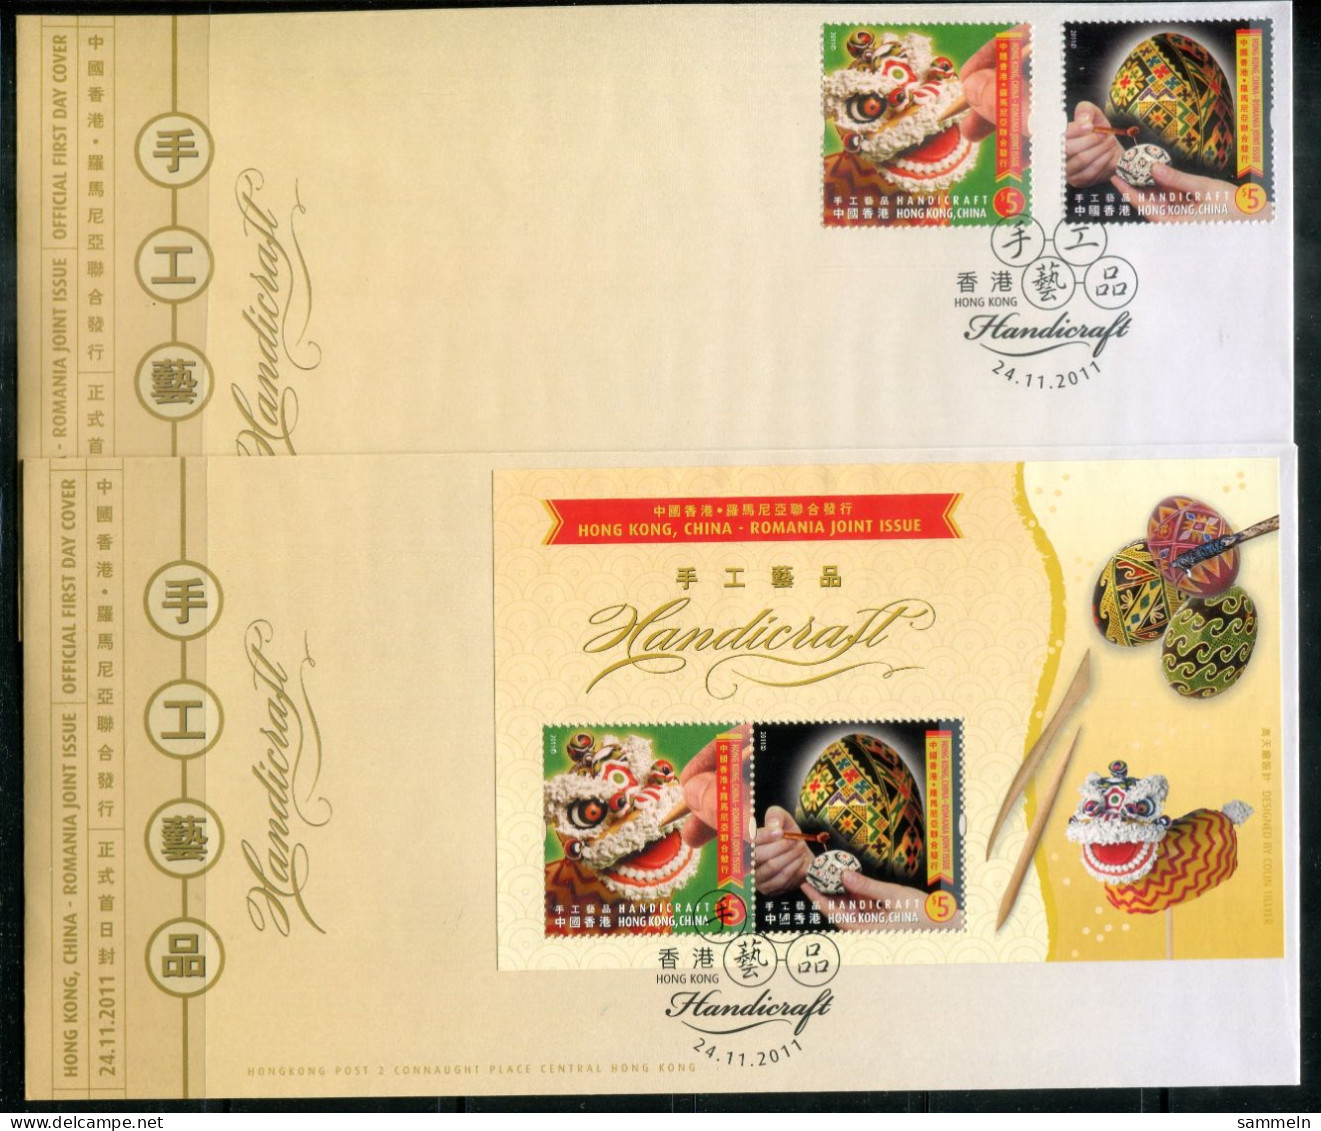 HONGKONG 1666-1667 + Block 234, Bl.234 FDC (2) - Handarbeit, Handicraft, Travail Manuel, Joint Issue - HONG KONG - Lettres & Documents